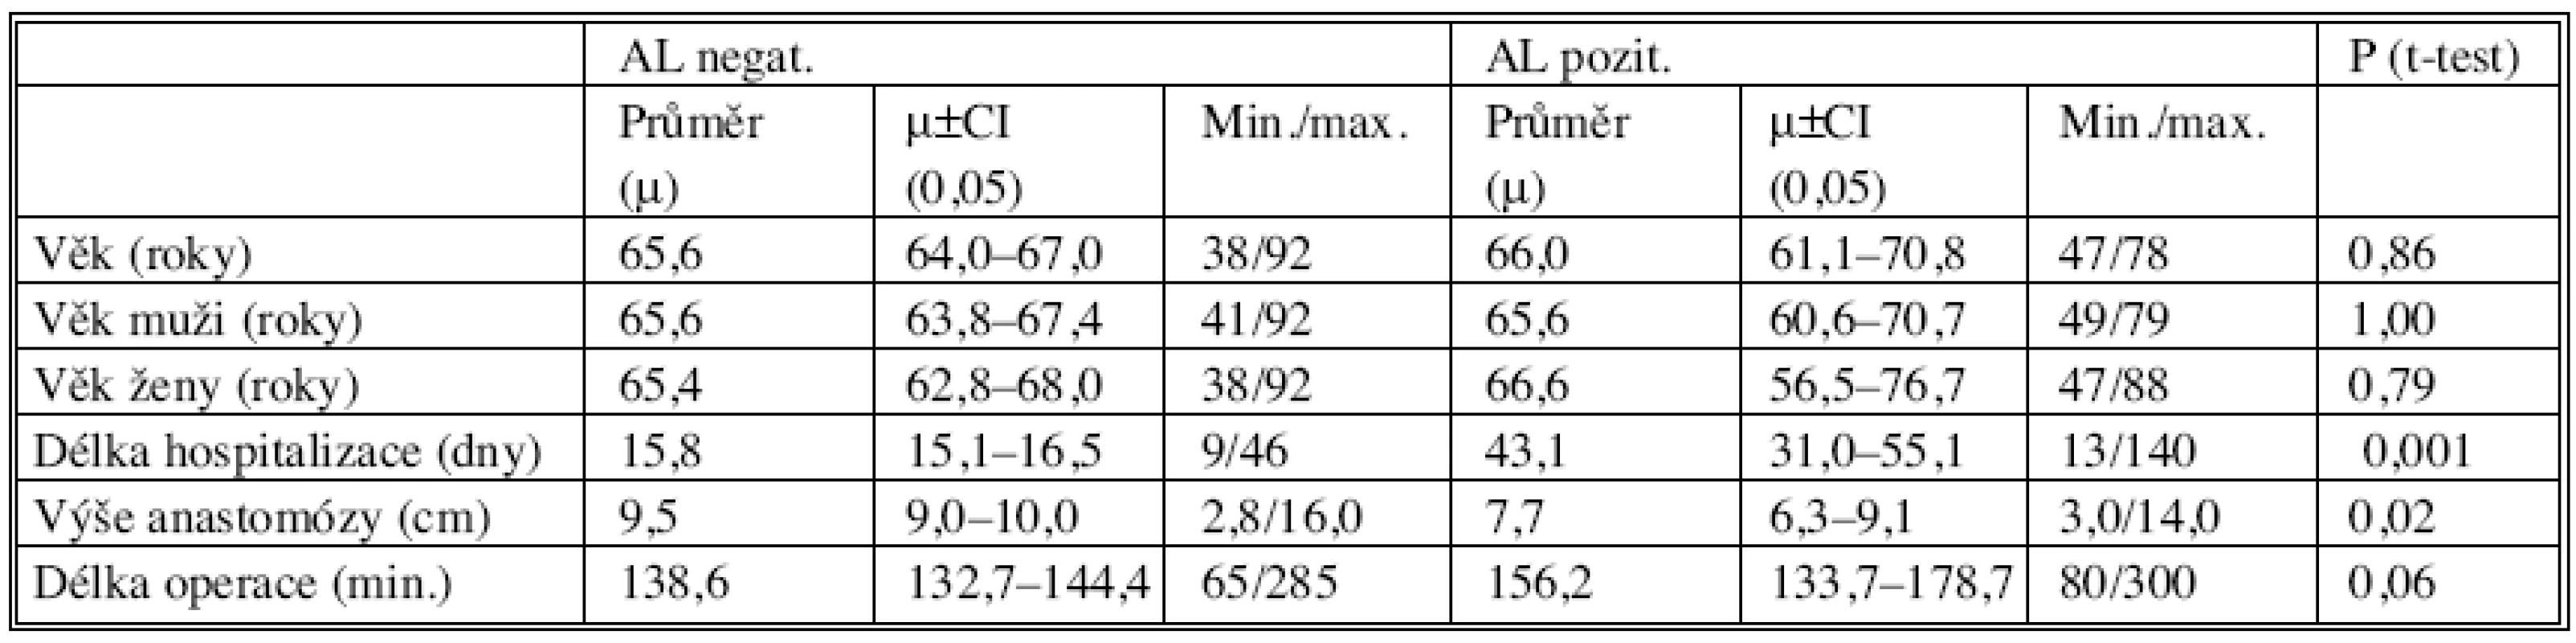 Základní parametry vyšetřovaného souboru ve skupinách AL (-)/AL (+)
Tab. 3. Baseline parameters of the studied group in the AL (-)/AL (+) subgroups